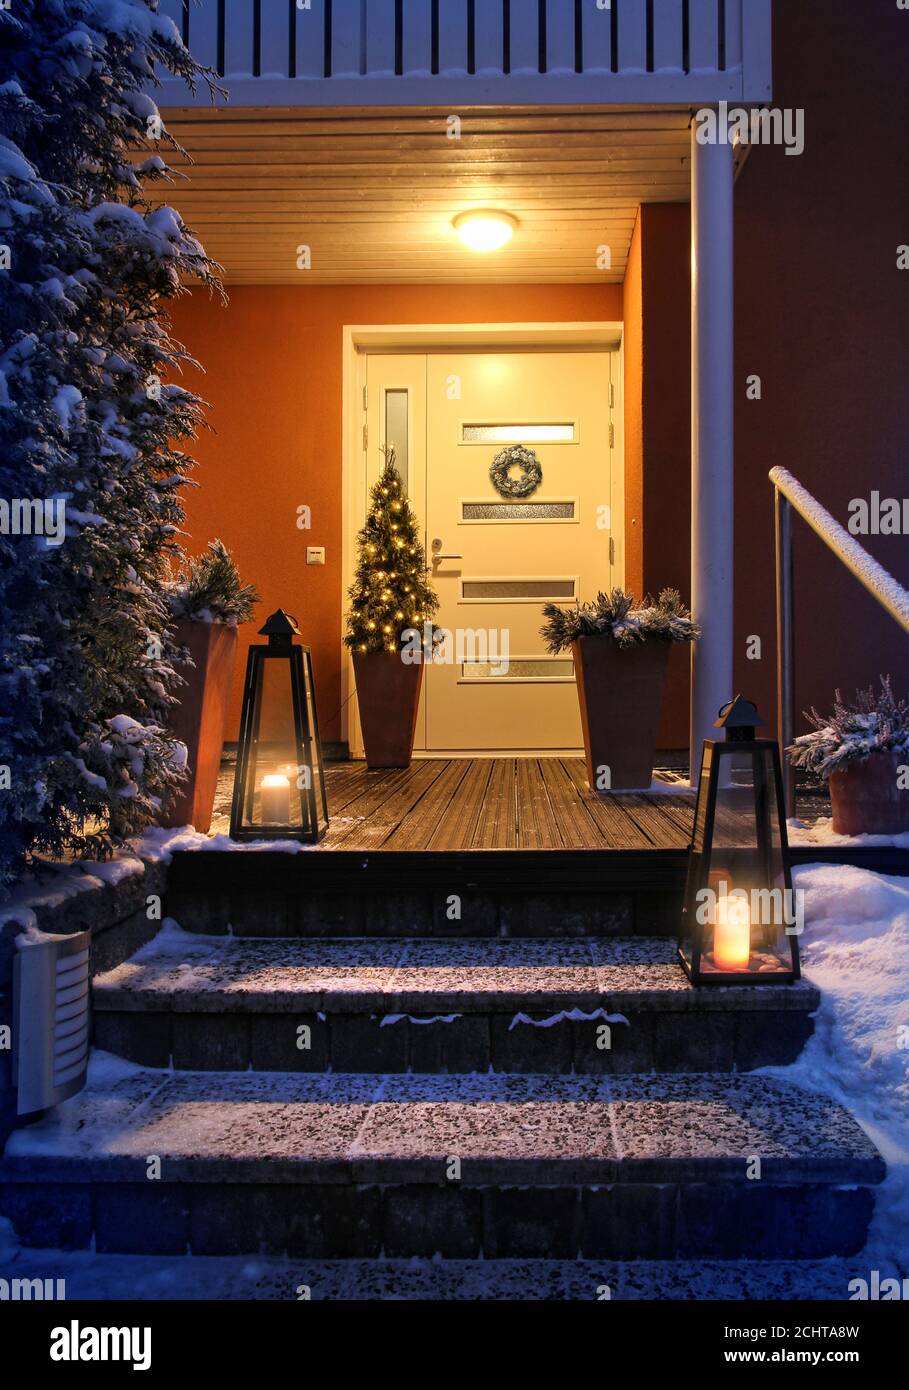 Willkommen Weihnachten - Haus Eingang verschneiten Treppen und Tür mit Dekoration Stockfoto